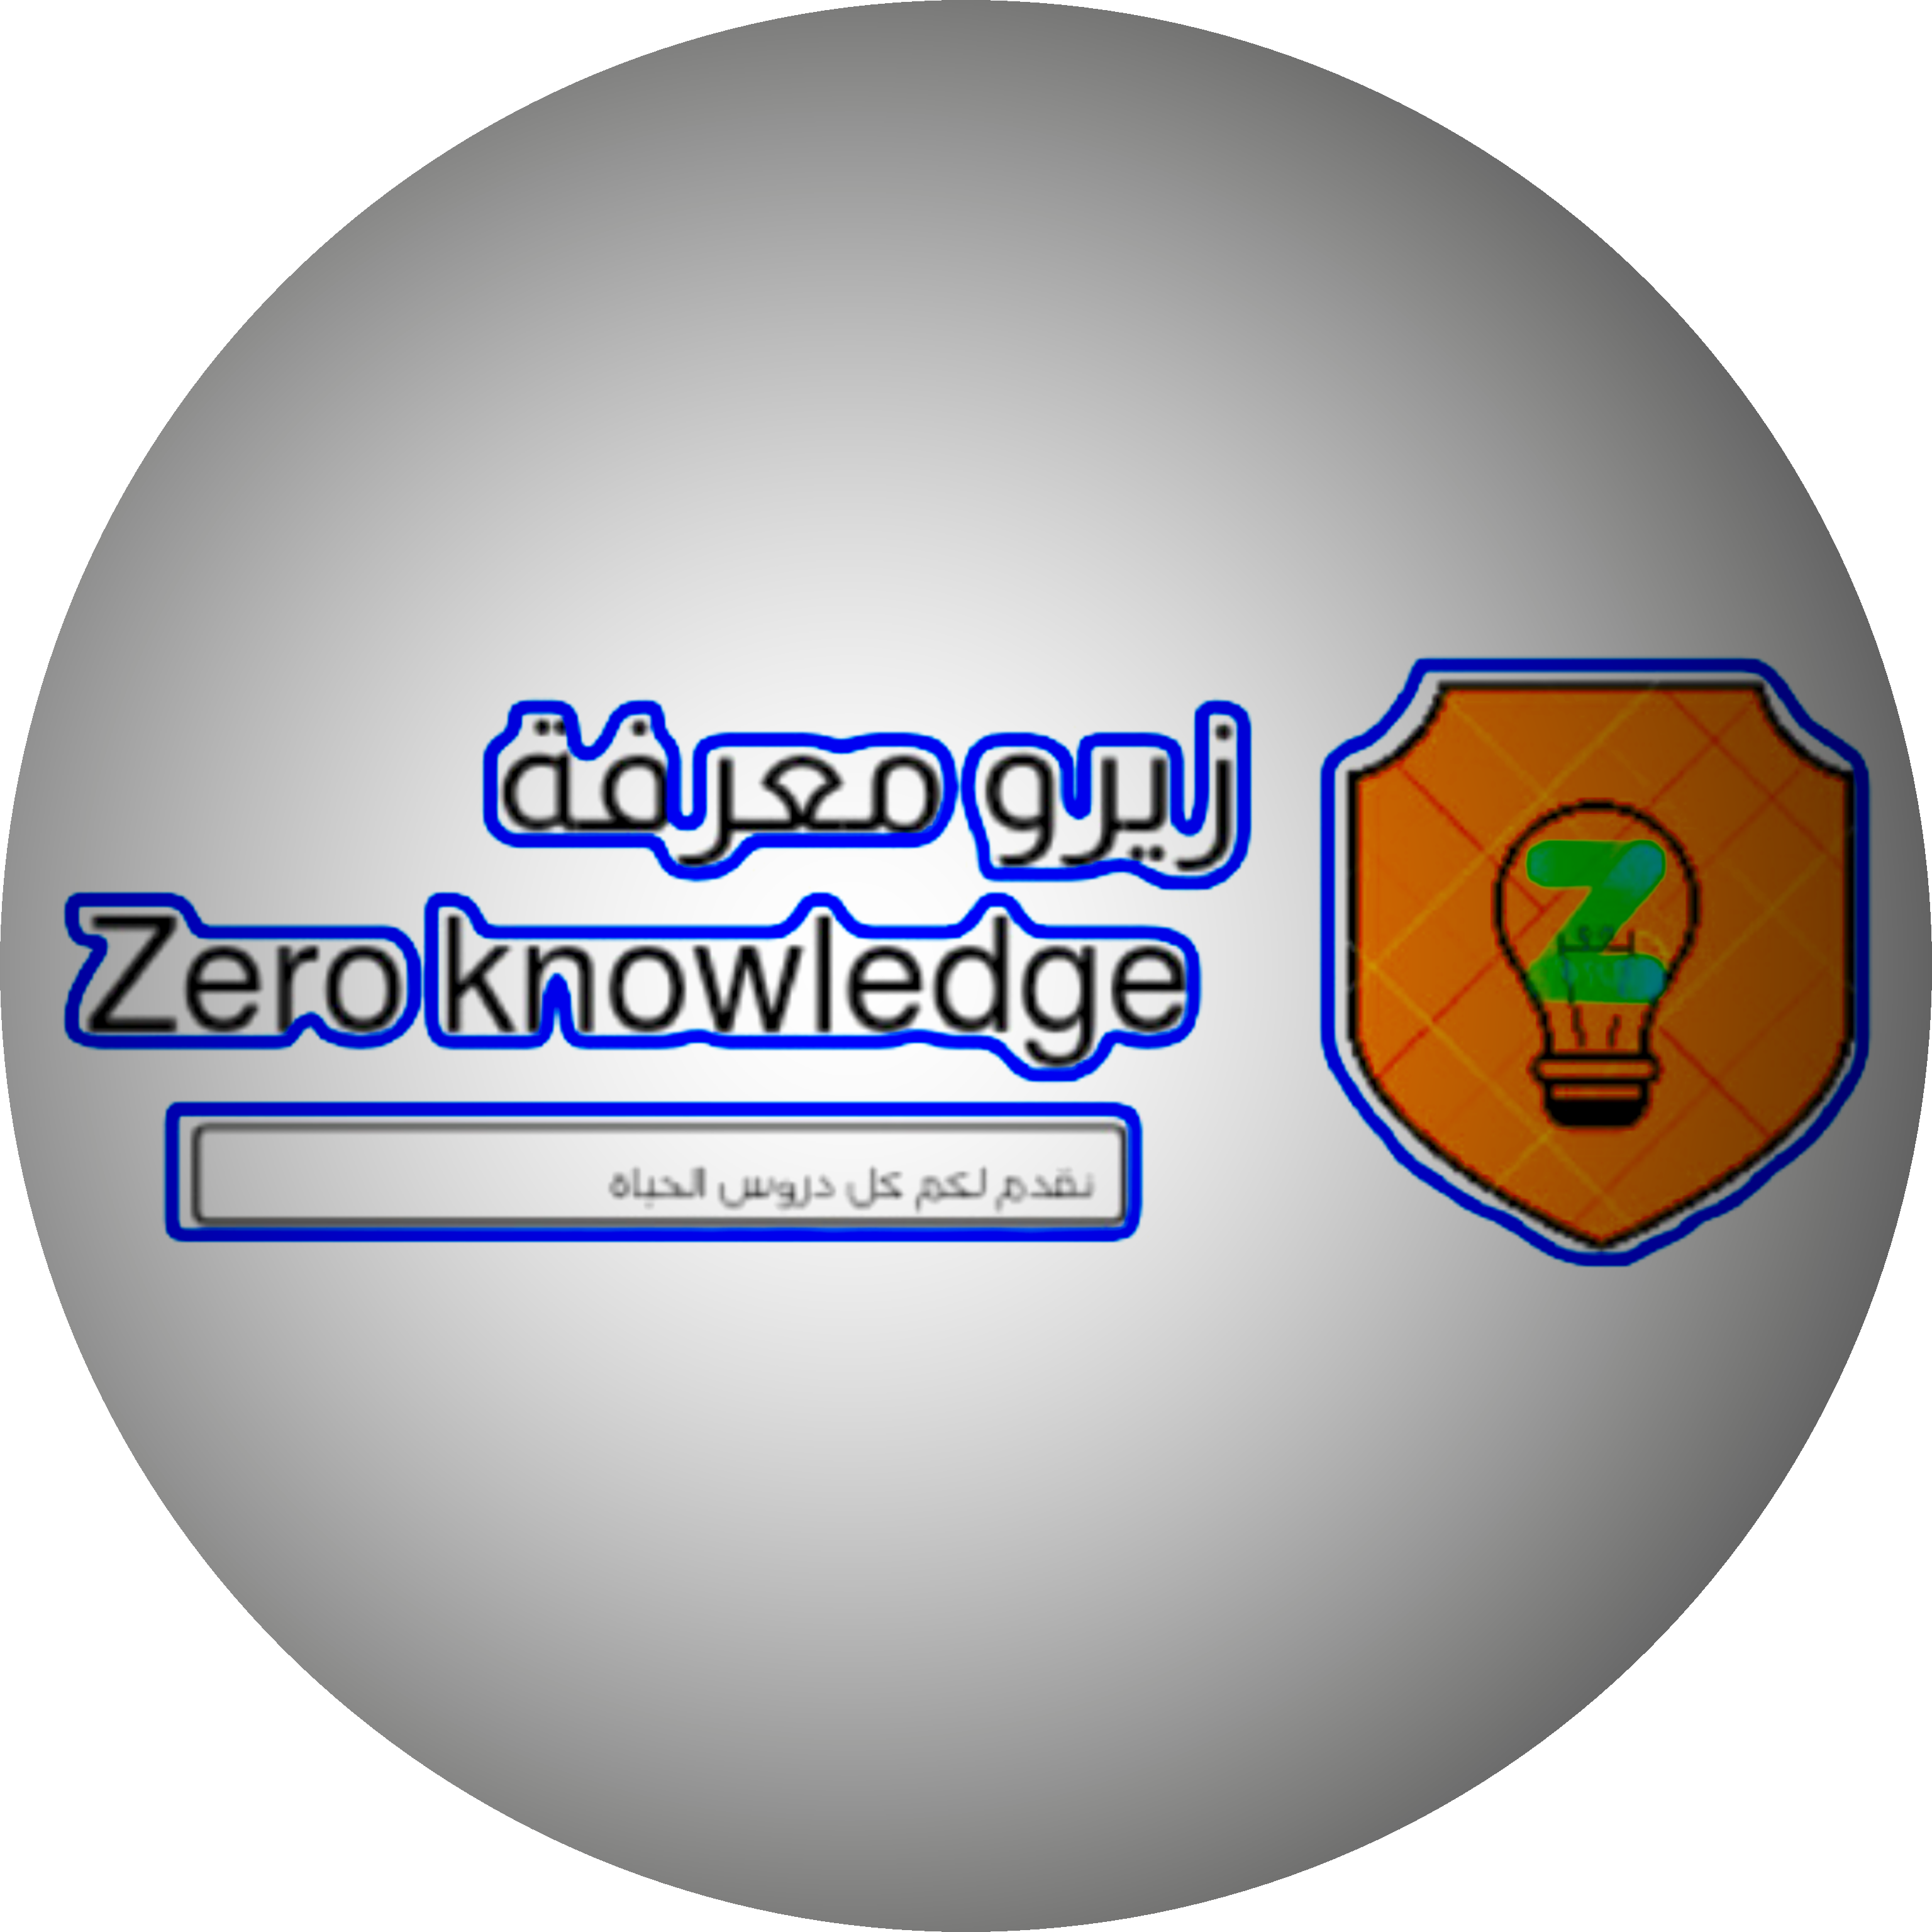 زيرو معرفة Zero knowledge